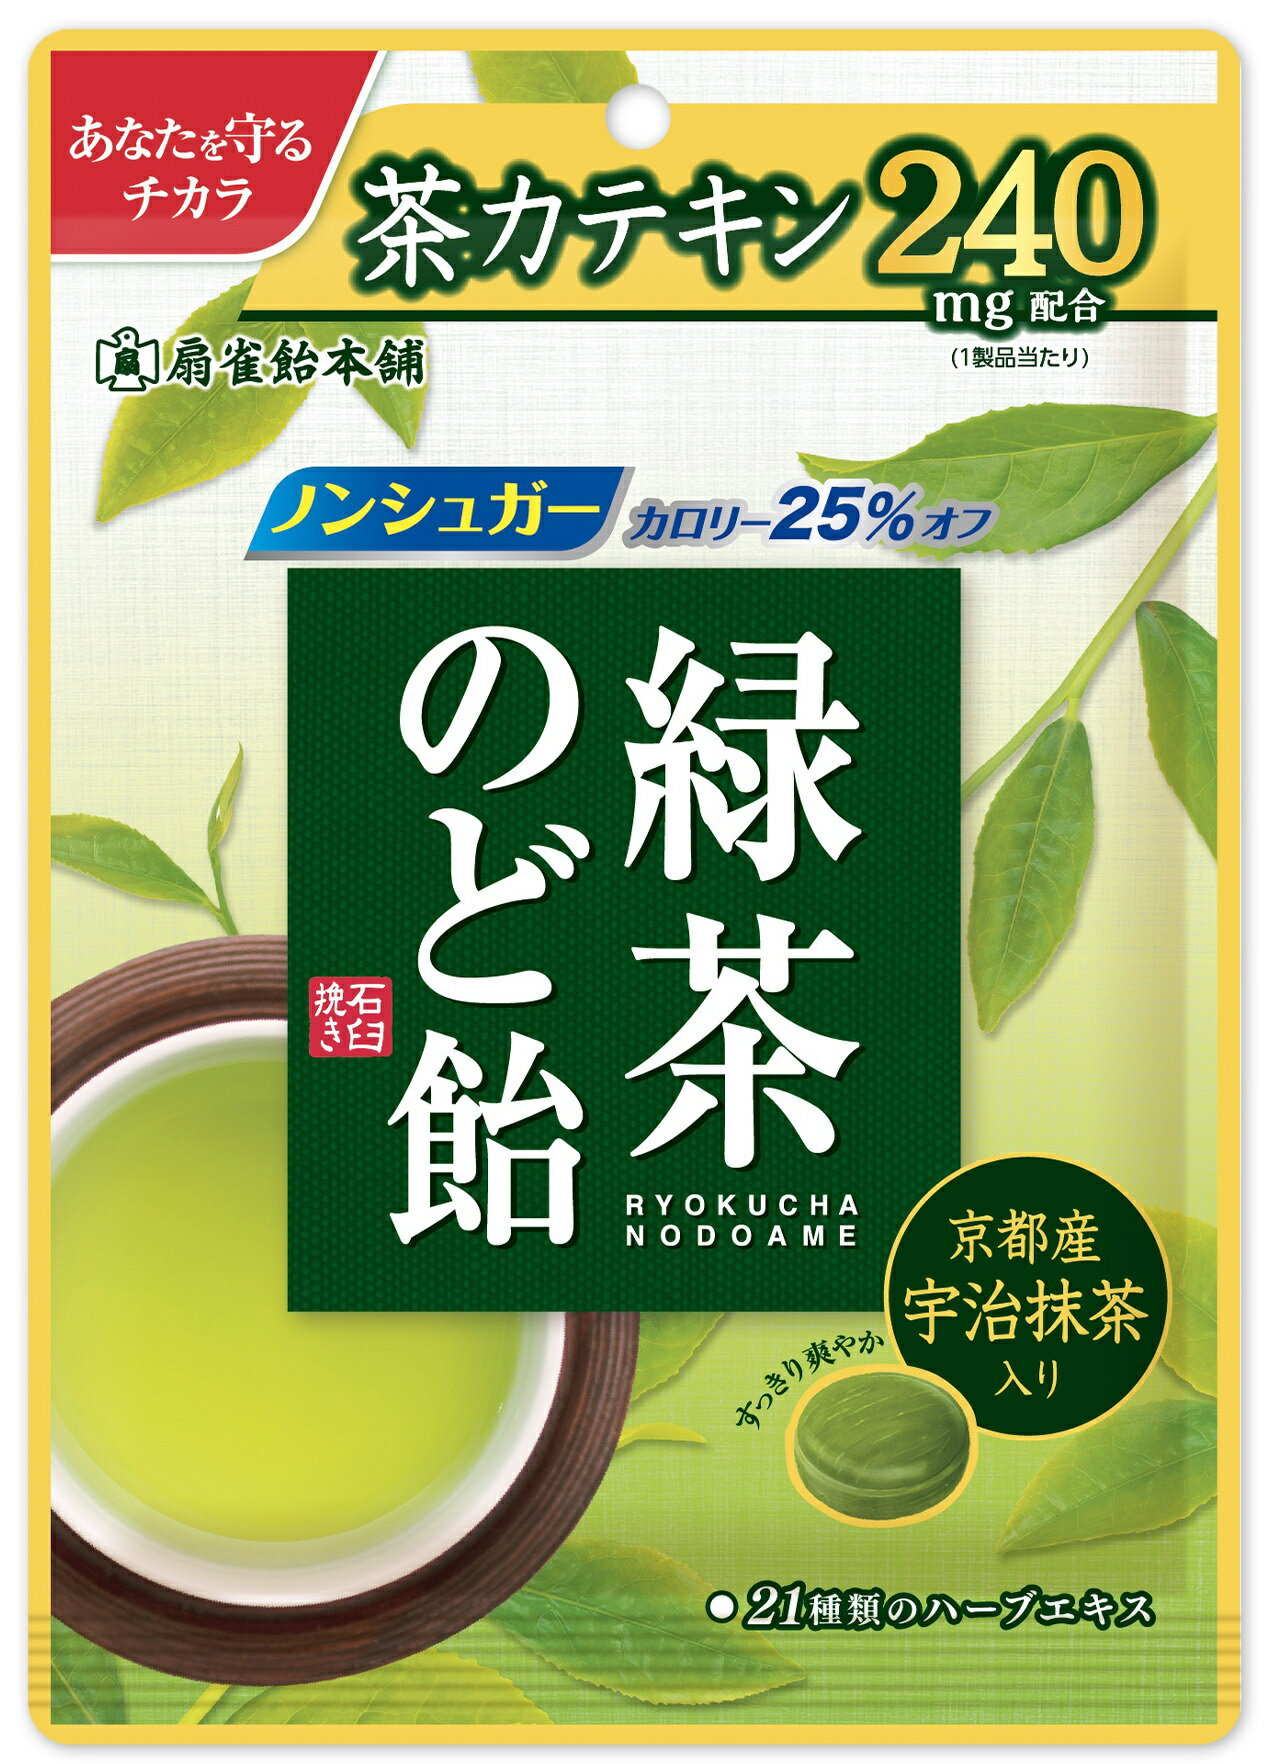 【カテキン・緑茶・特